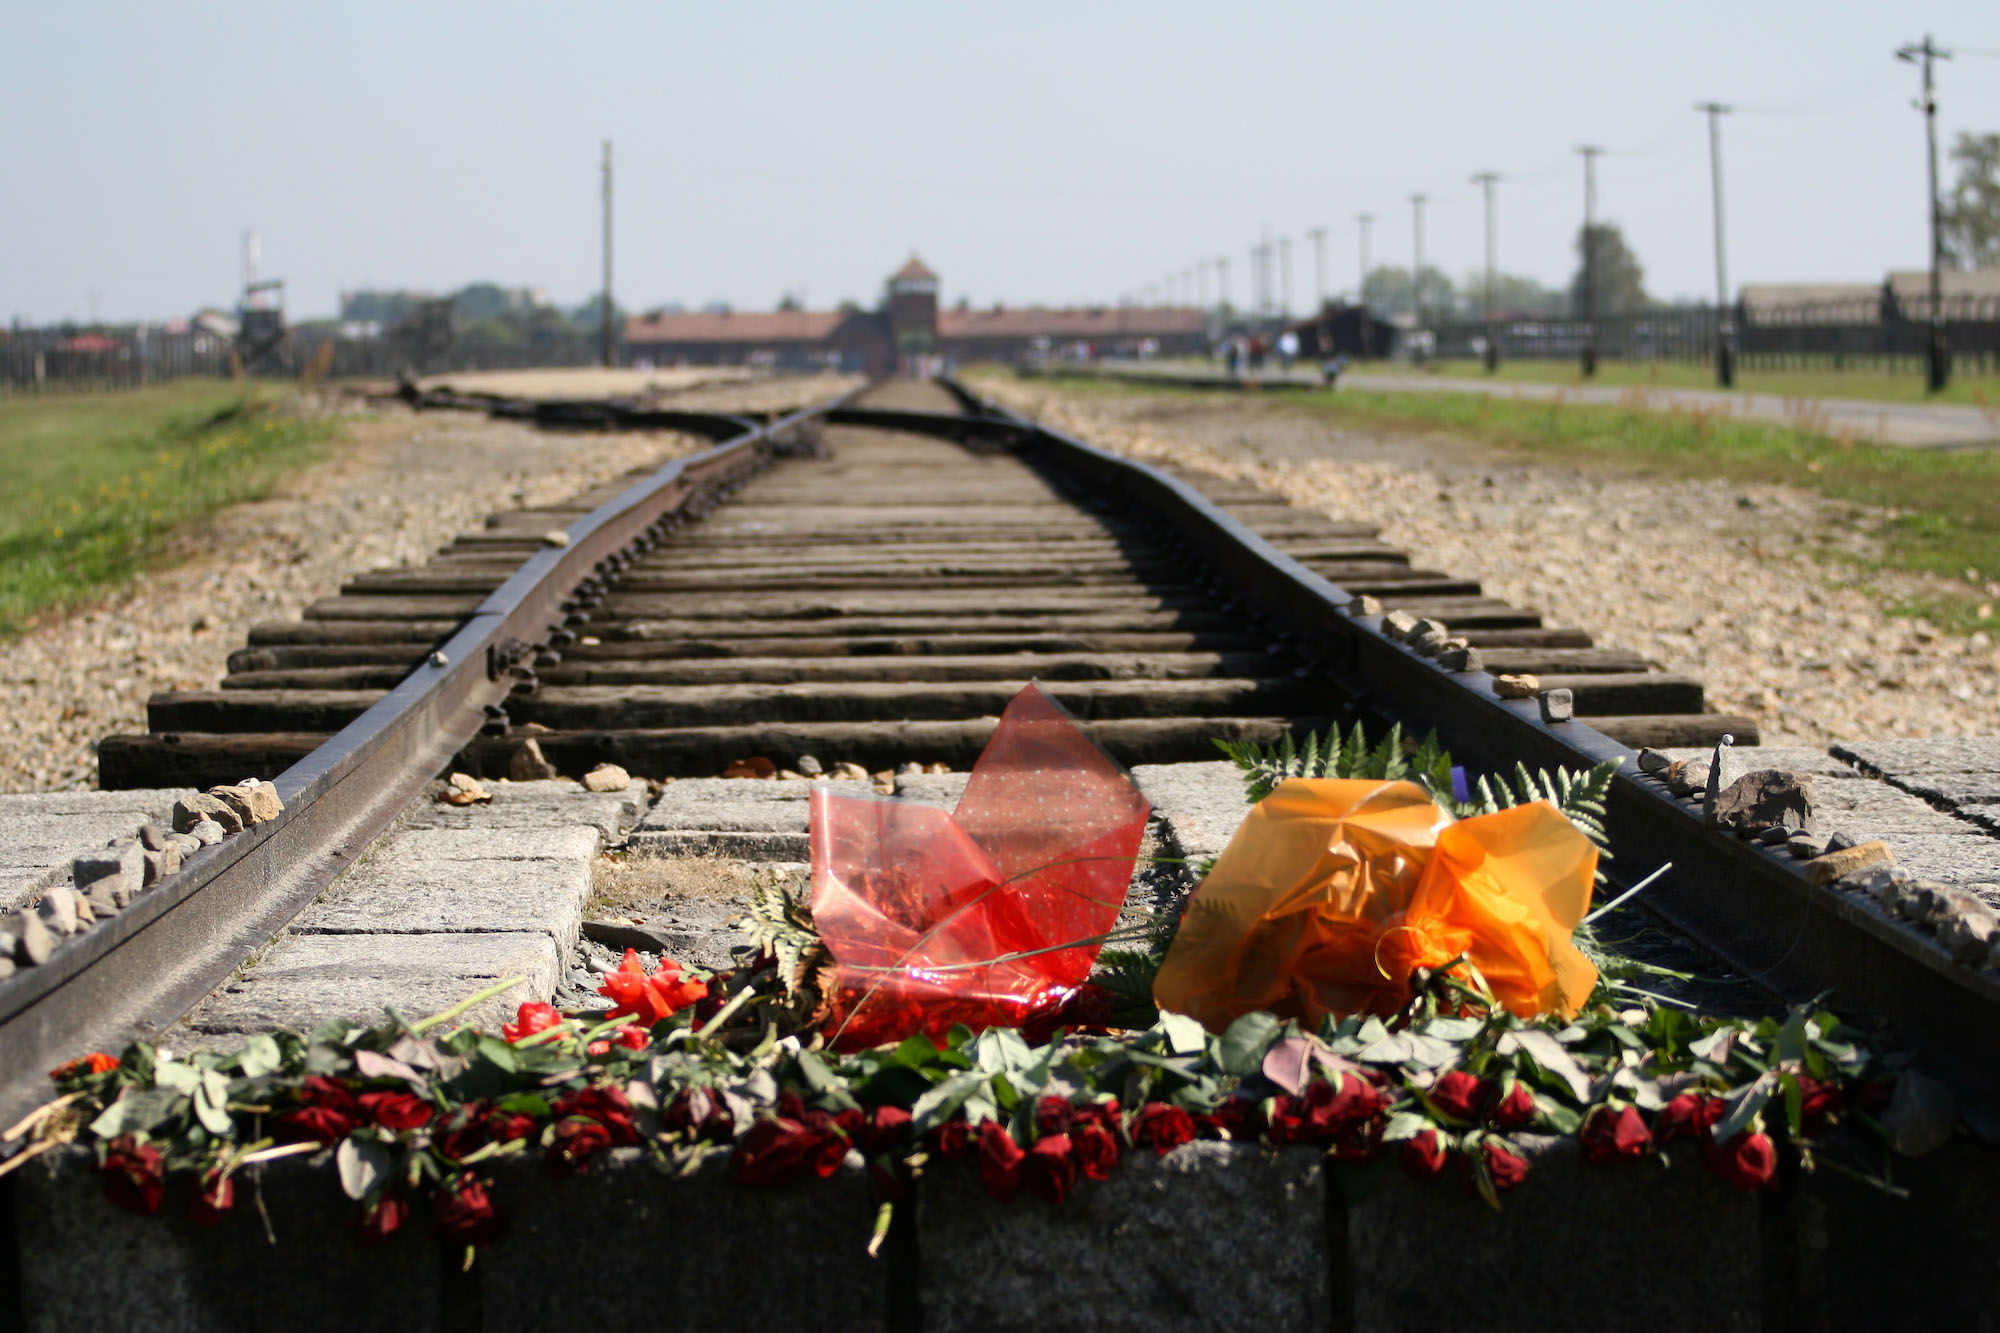 Die Gedenkstätte Auschwitz. Im Rahmen ihres Friedensdienstes begleiten und betreuen die Freiwilligen unter anderem Besuchergruppen. (c) www.pixabay.com